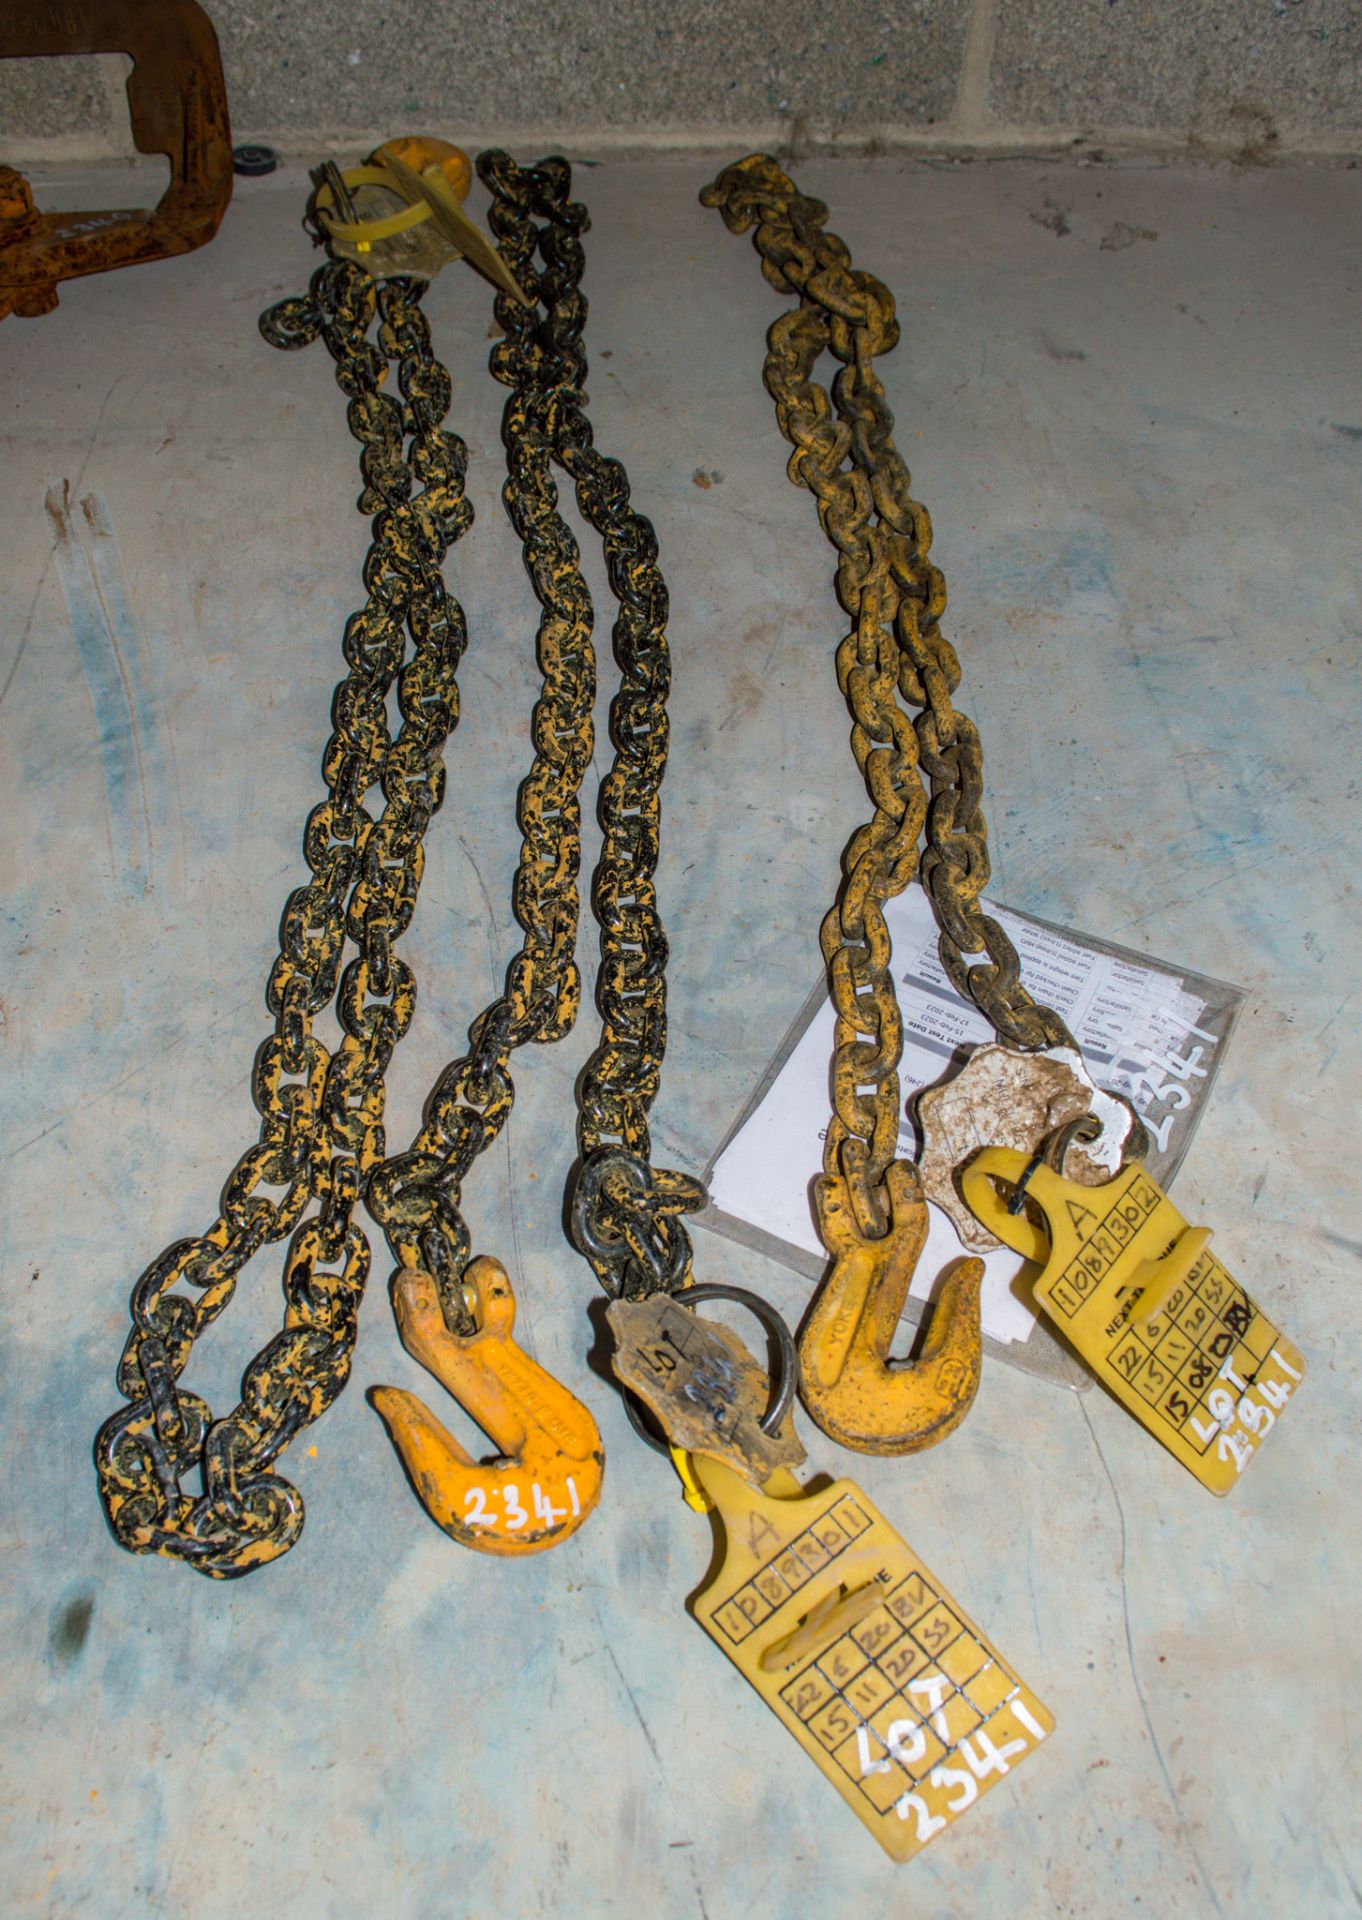 3 - 1 leg chains A1089301, A1089302, A1089300